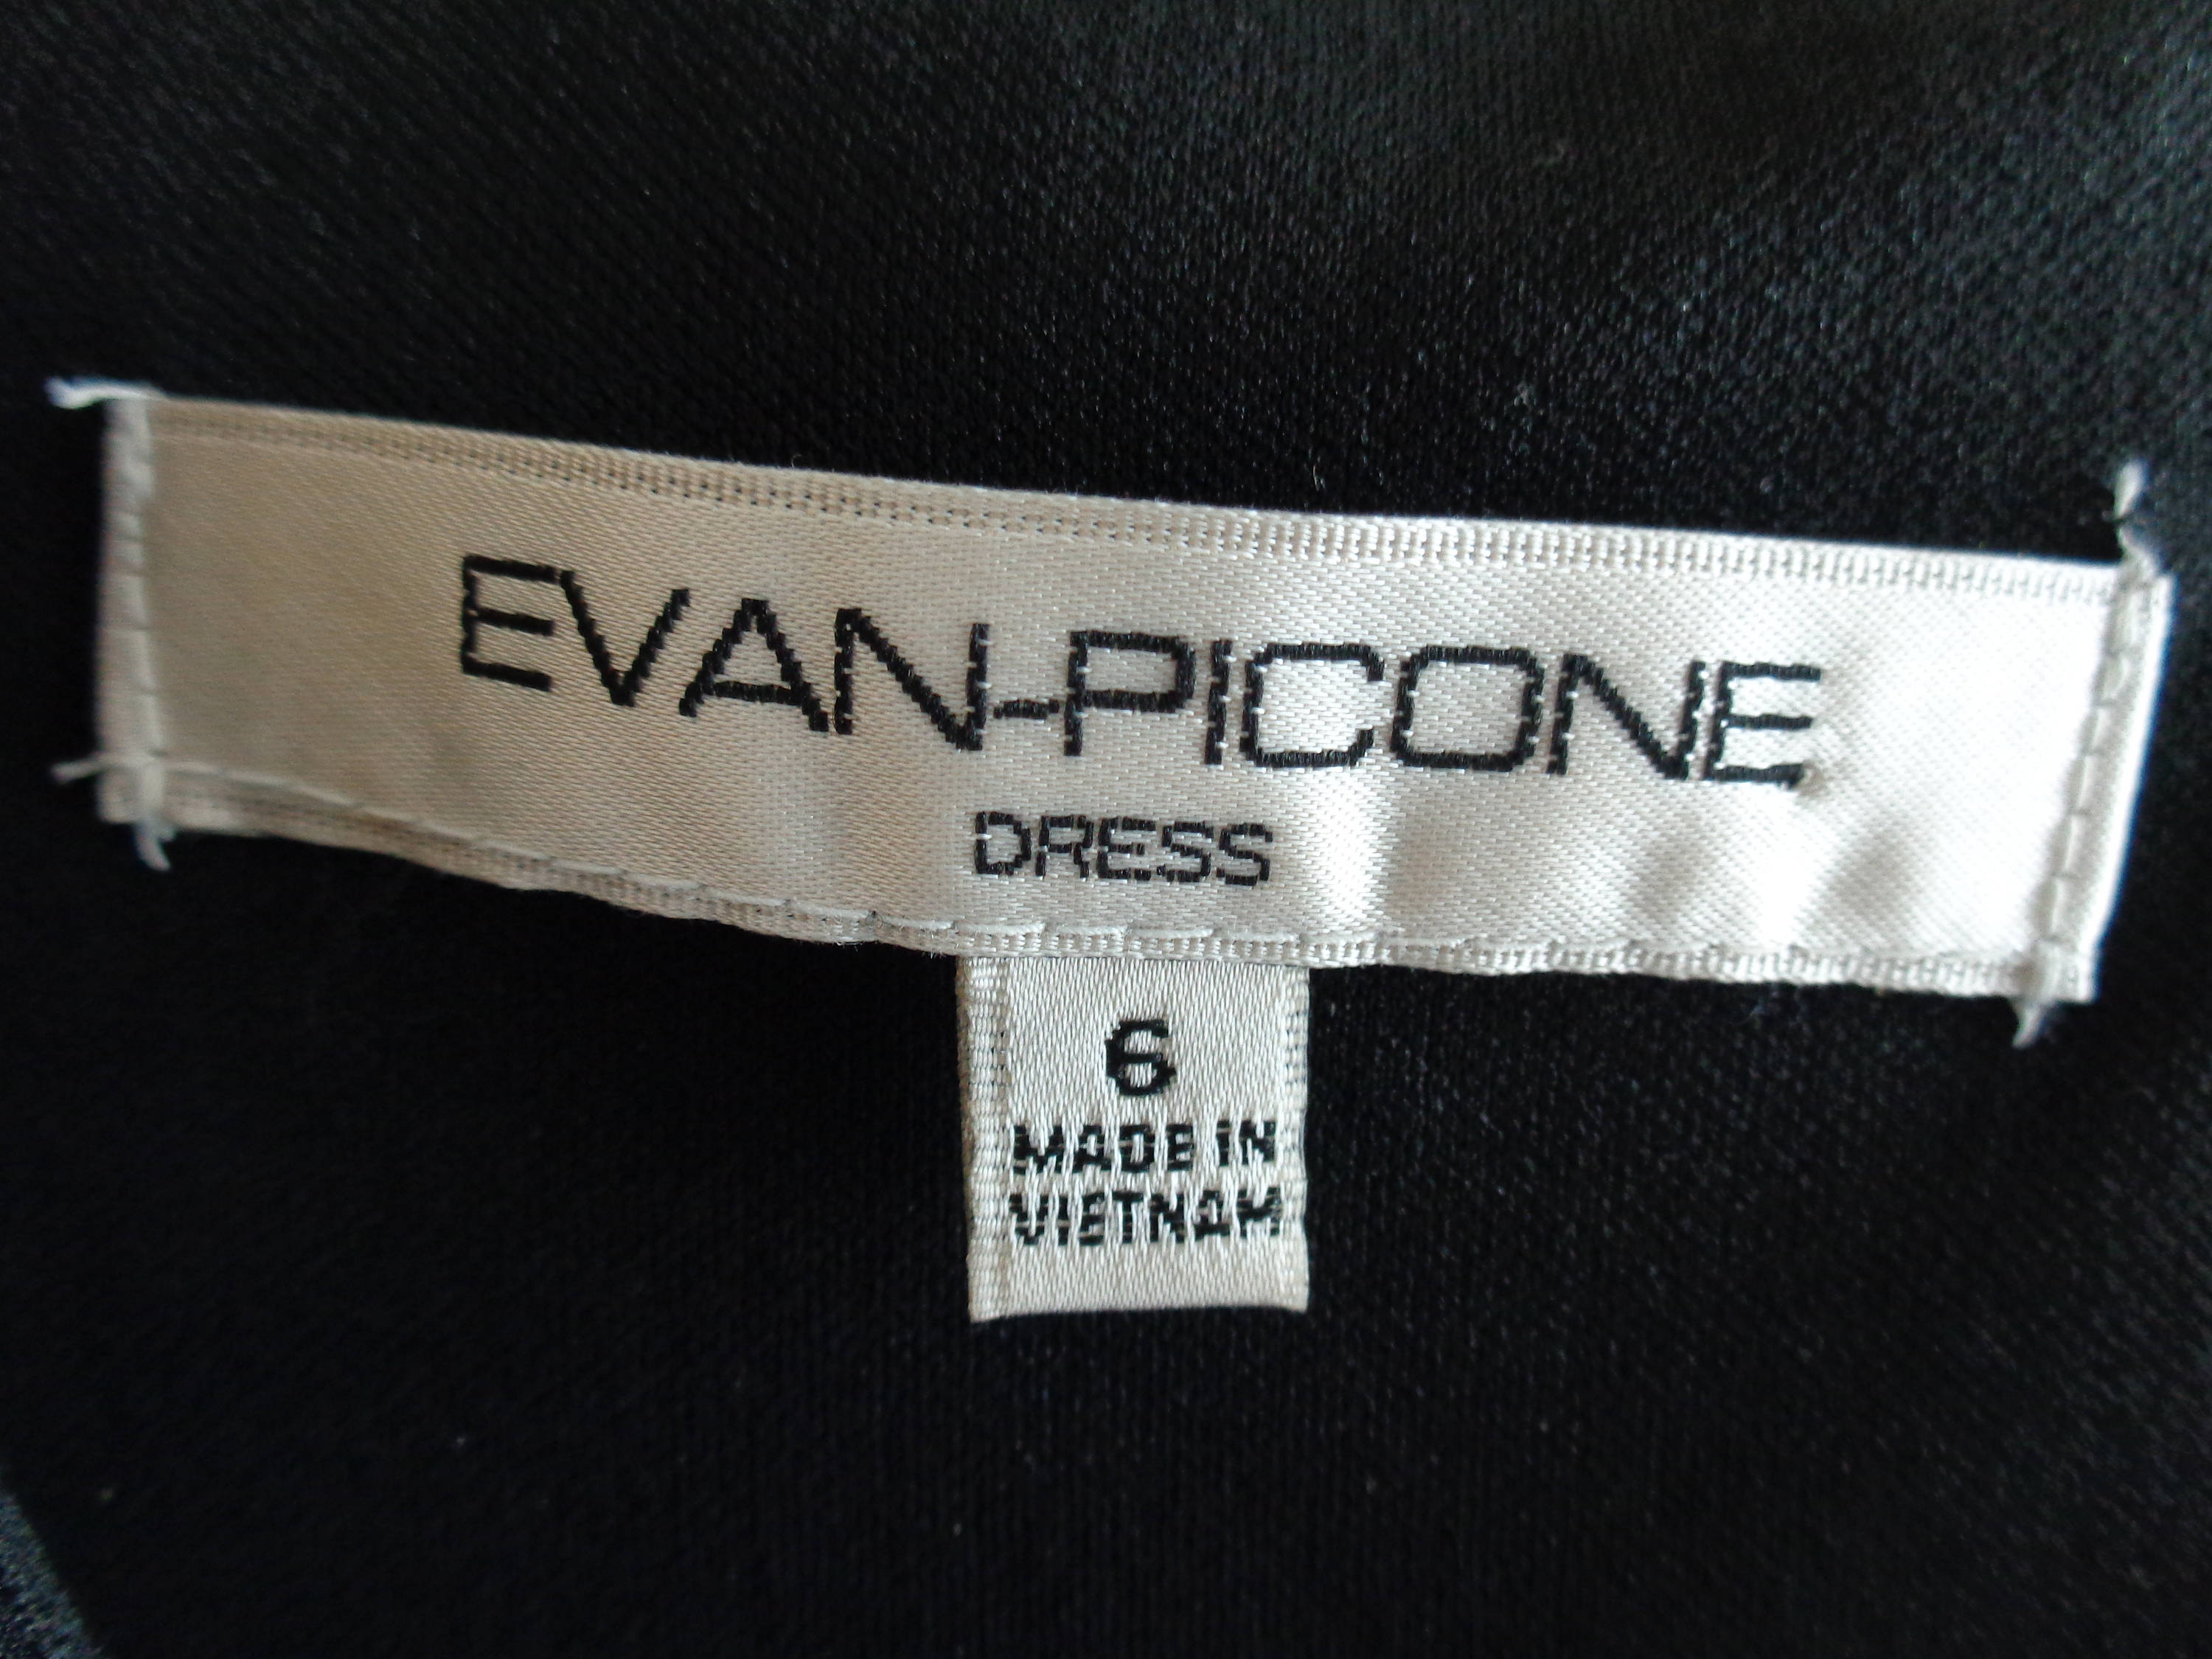 Black Label by Evan-Picone Dress Pants Women's 8 Gray Silver